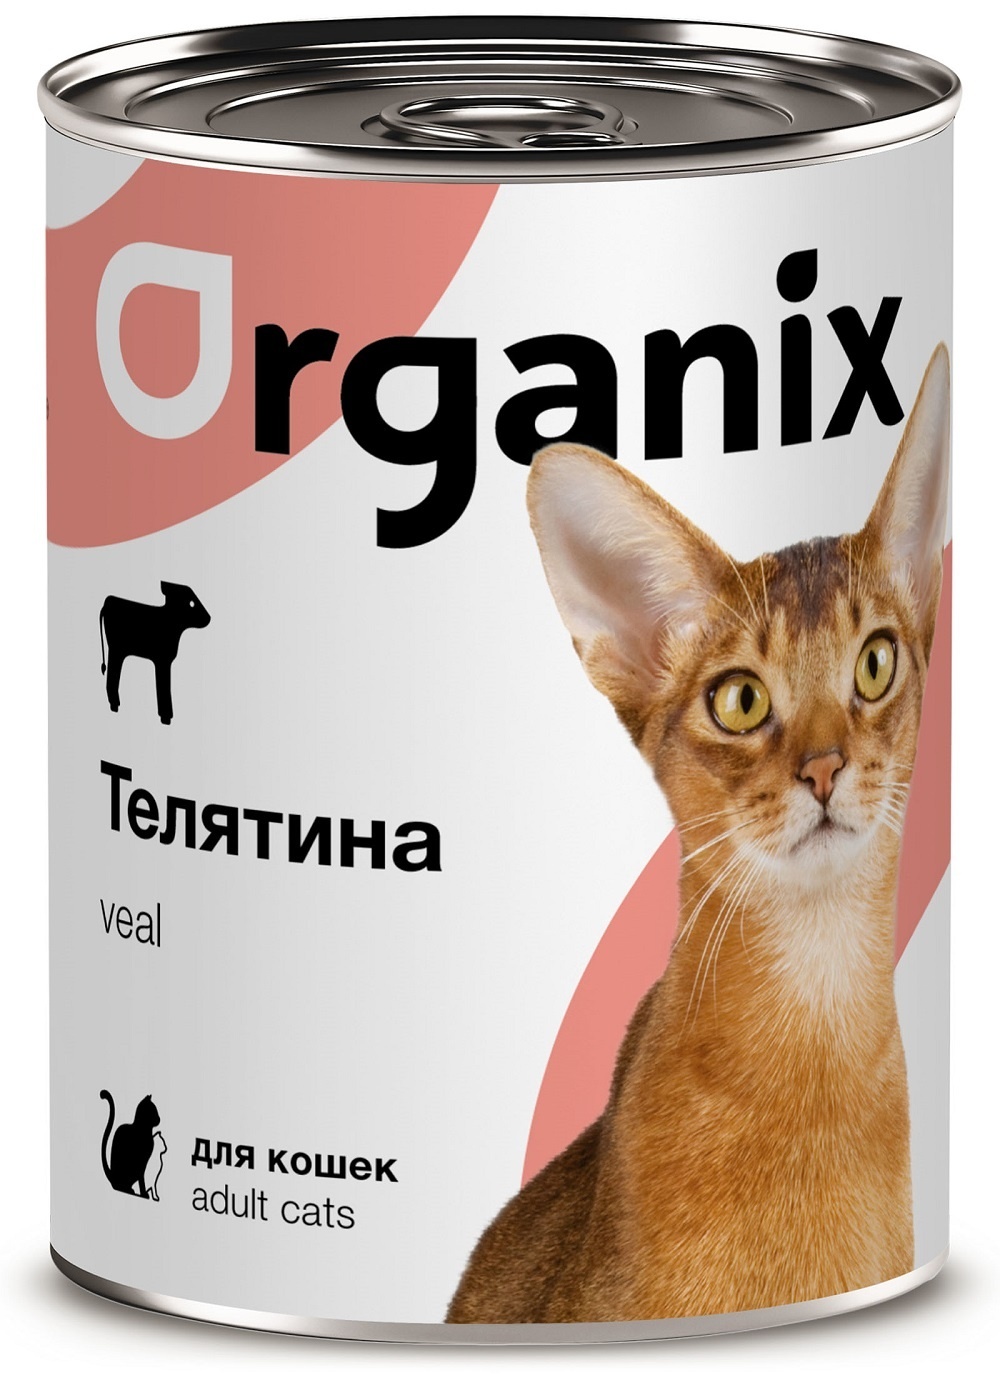 Organix консервы Organix консервы с телятиной для кошек (100 г)